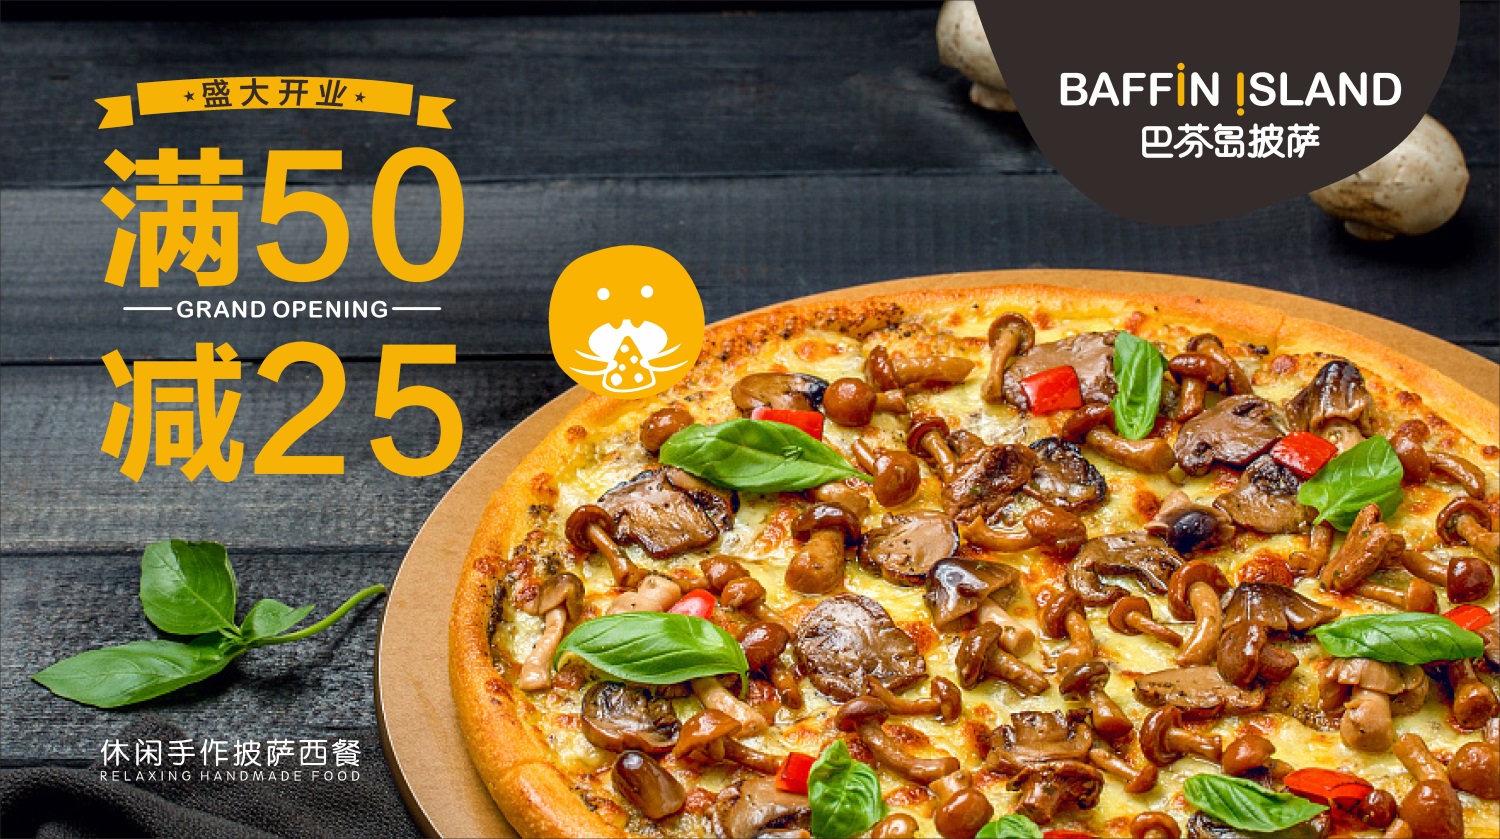 东莞西餐品牌巴芬岛披萨食物拍摄